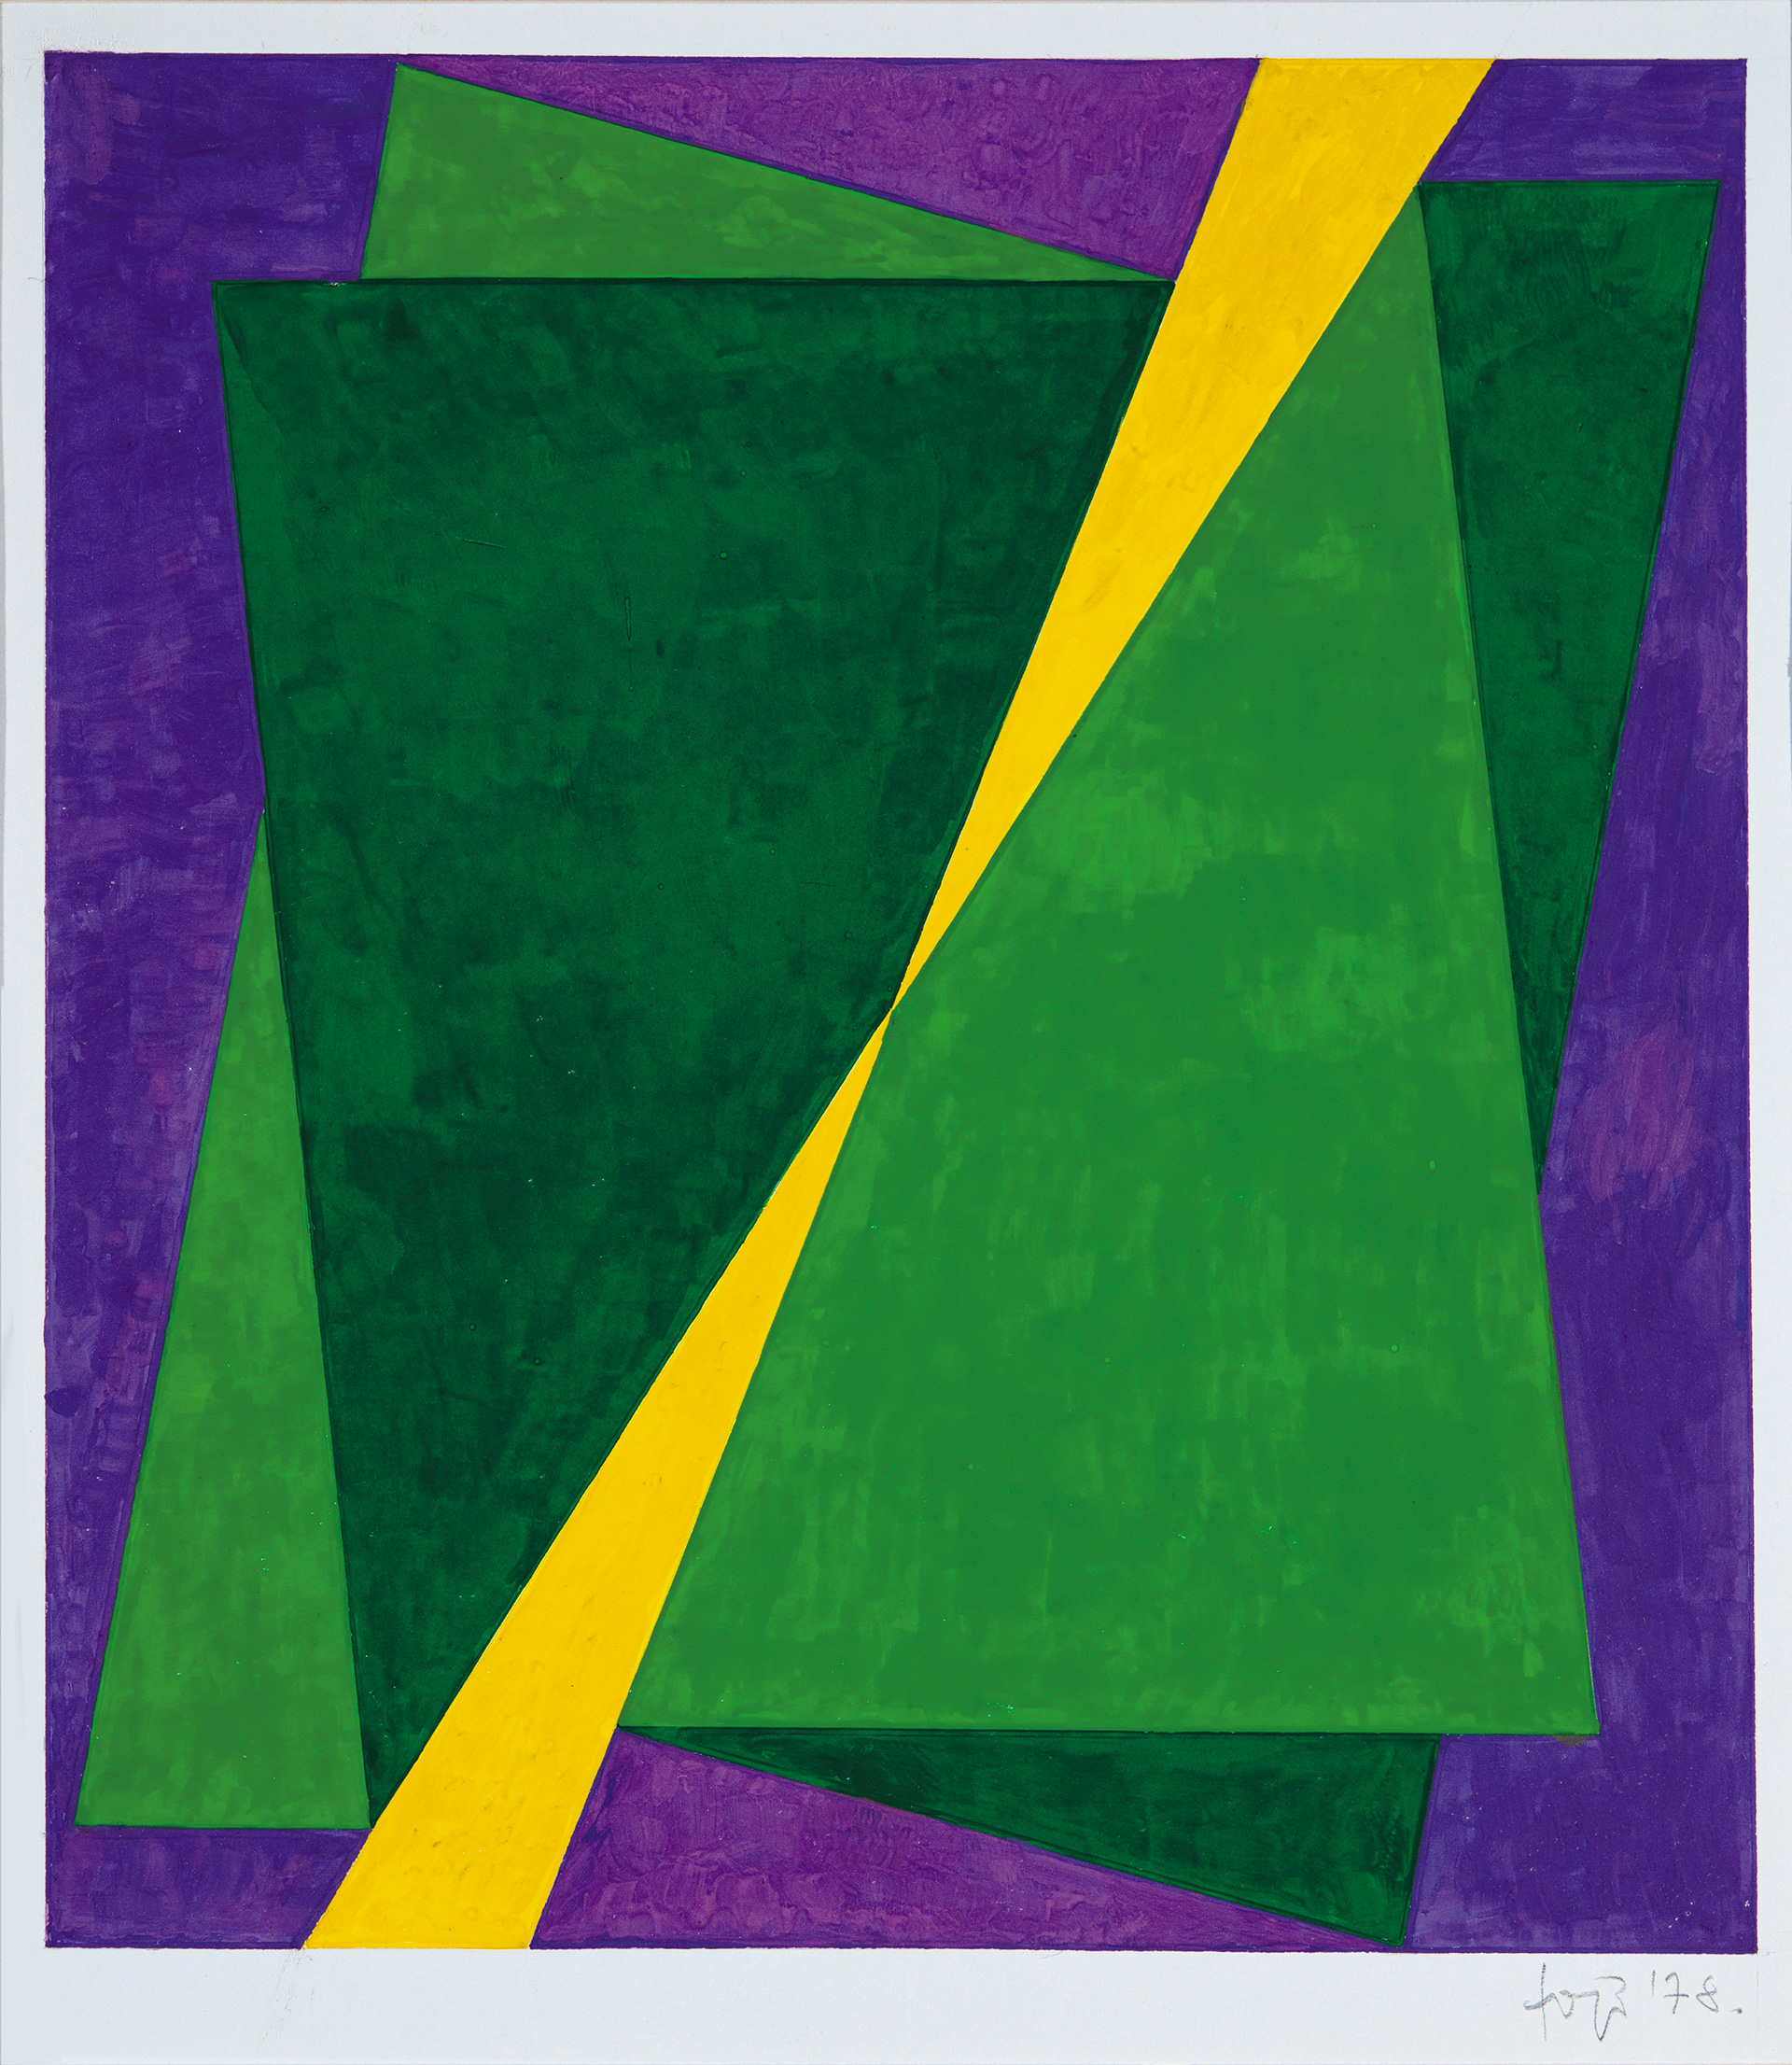 Fajó János (1937-2018) Zöld-sárga-lila kompozíció, 1978